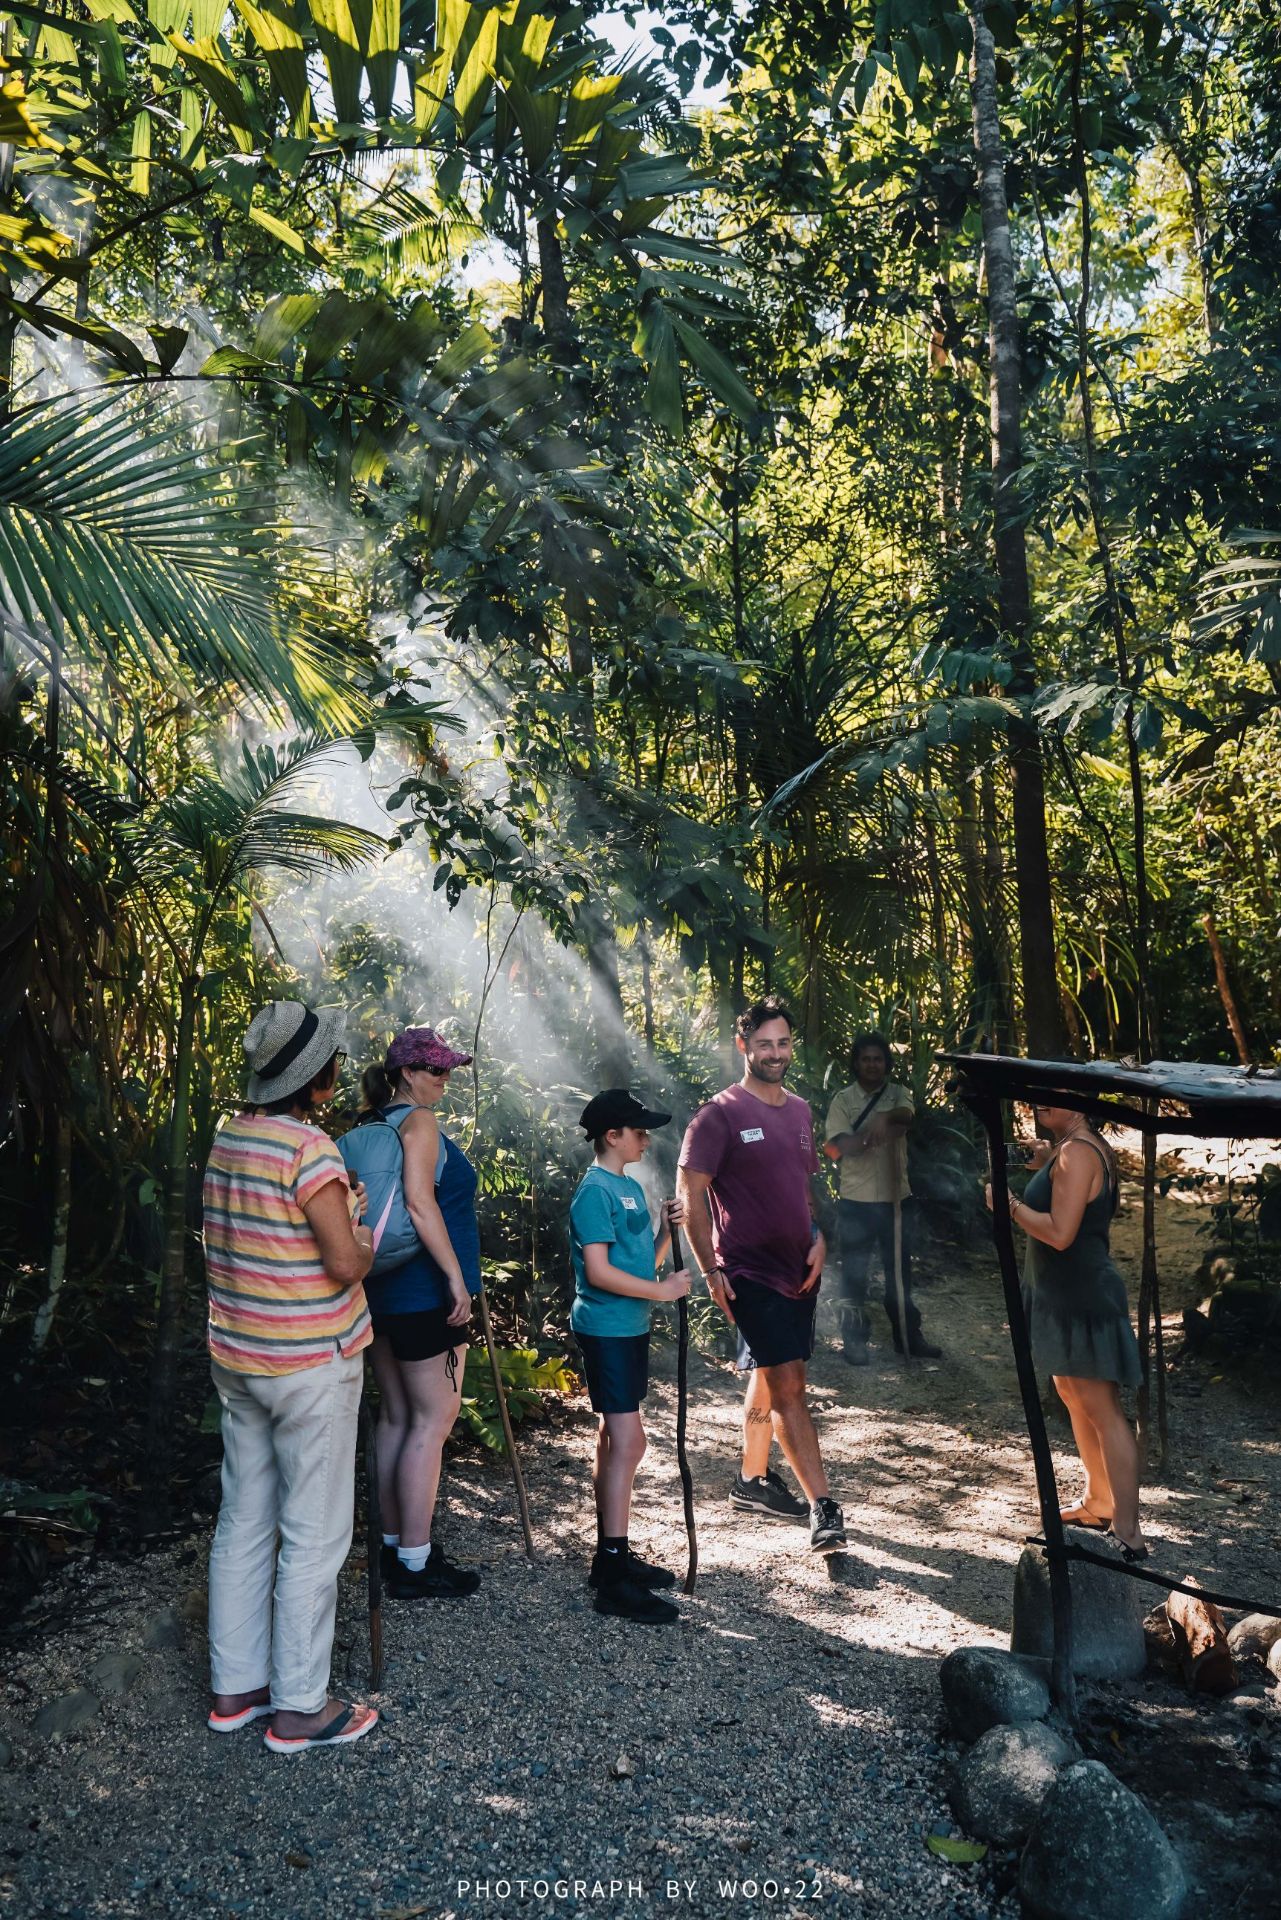 与澳洲原住民探索神秘的雨林 库雅拉尼族人（Kuku Yalanji）是昆士兰戴恩树雨林地区的原住民。